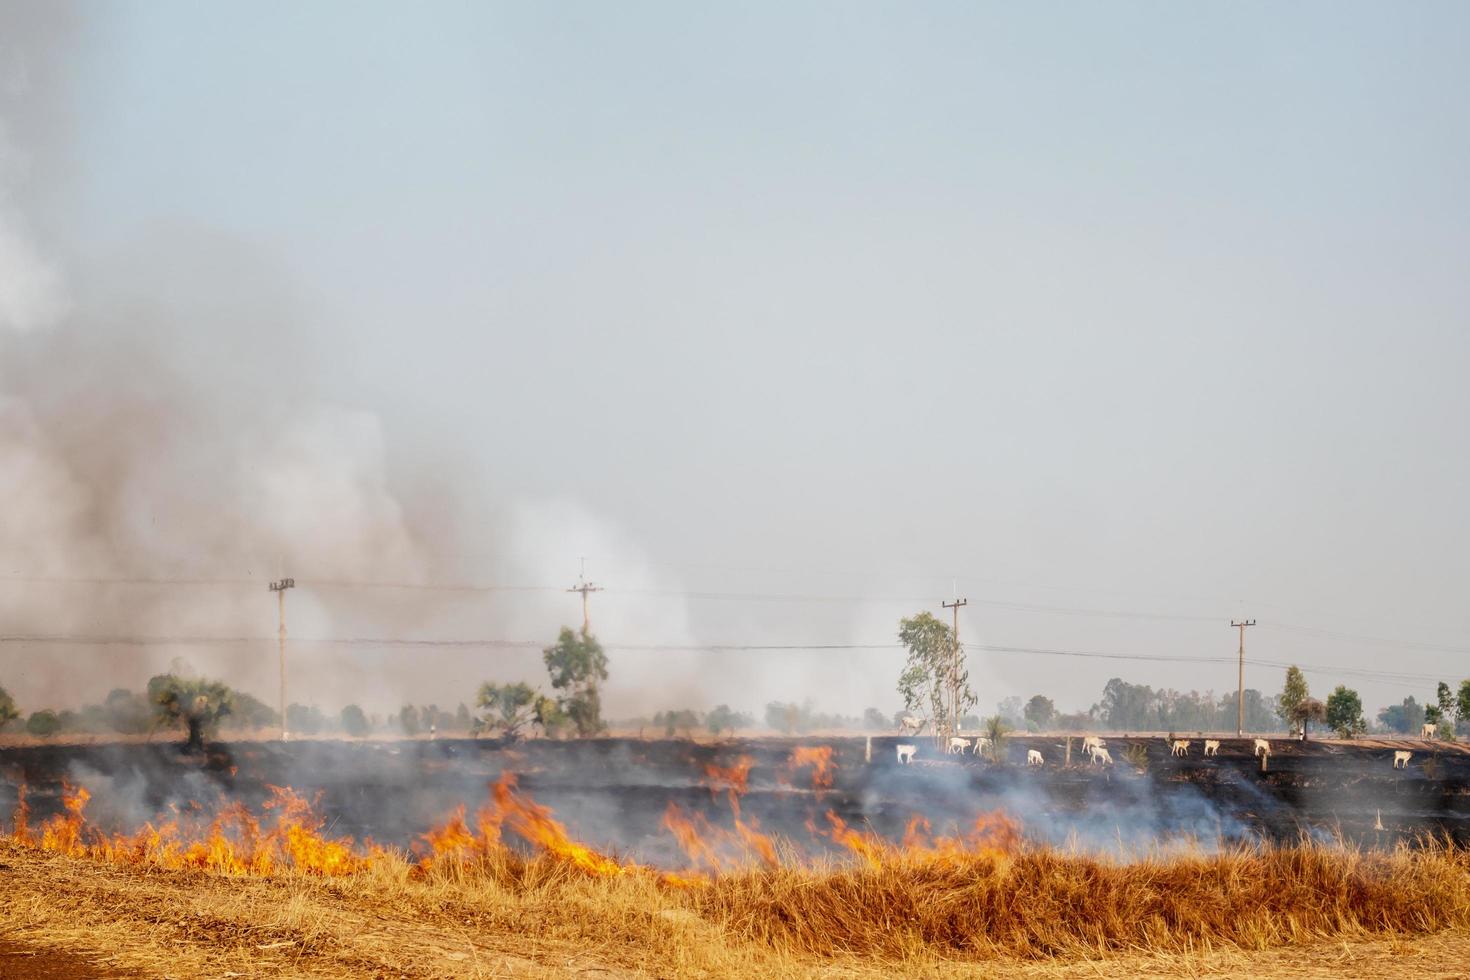 pm 2.5 luchtvervuilingsprobleem door rijstverbranding in rijstvelden door boeren. foto